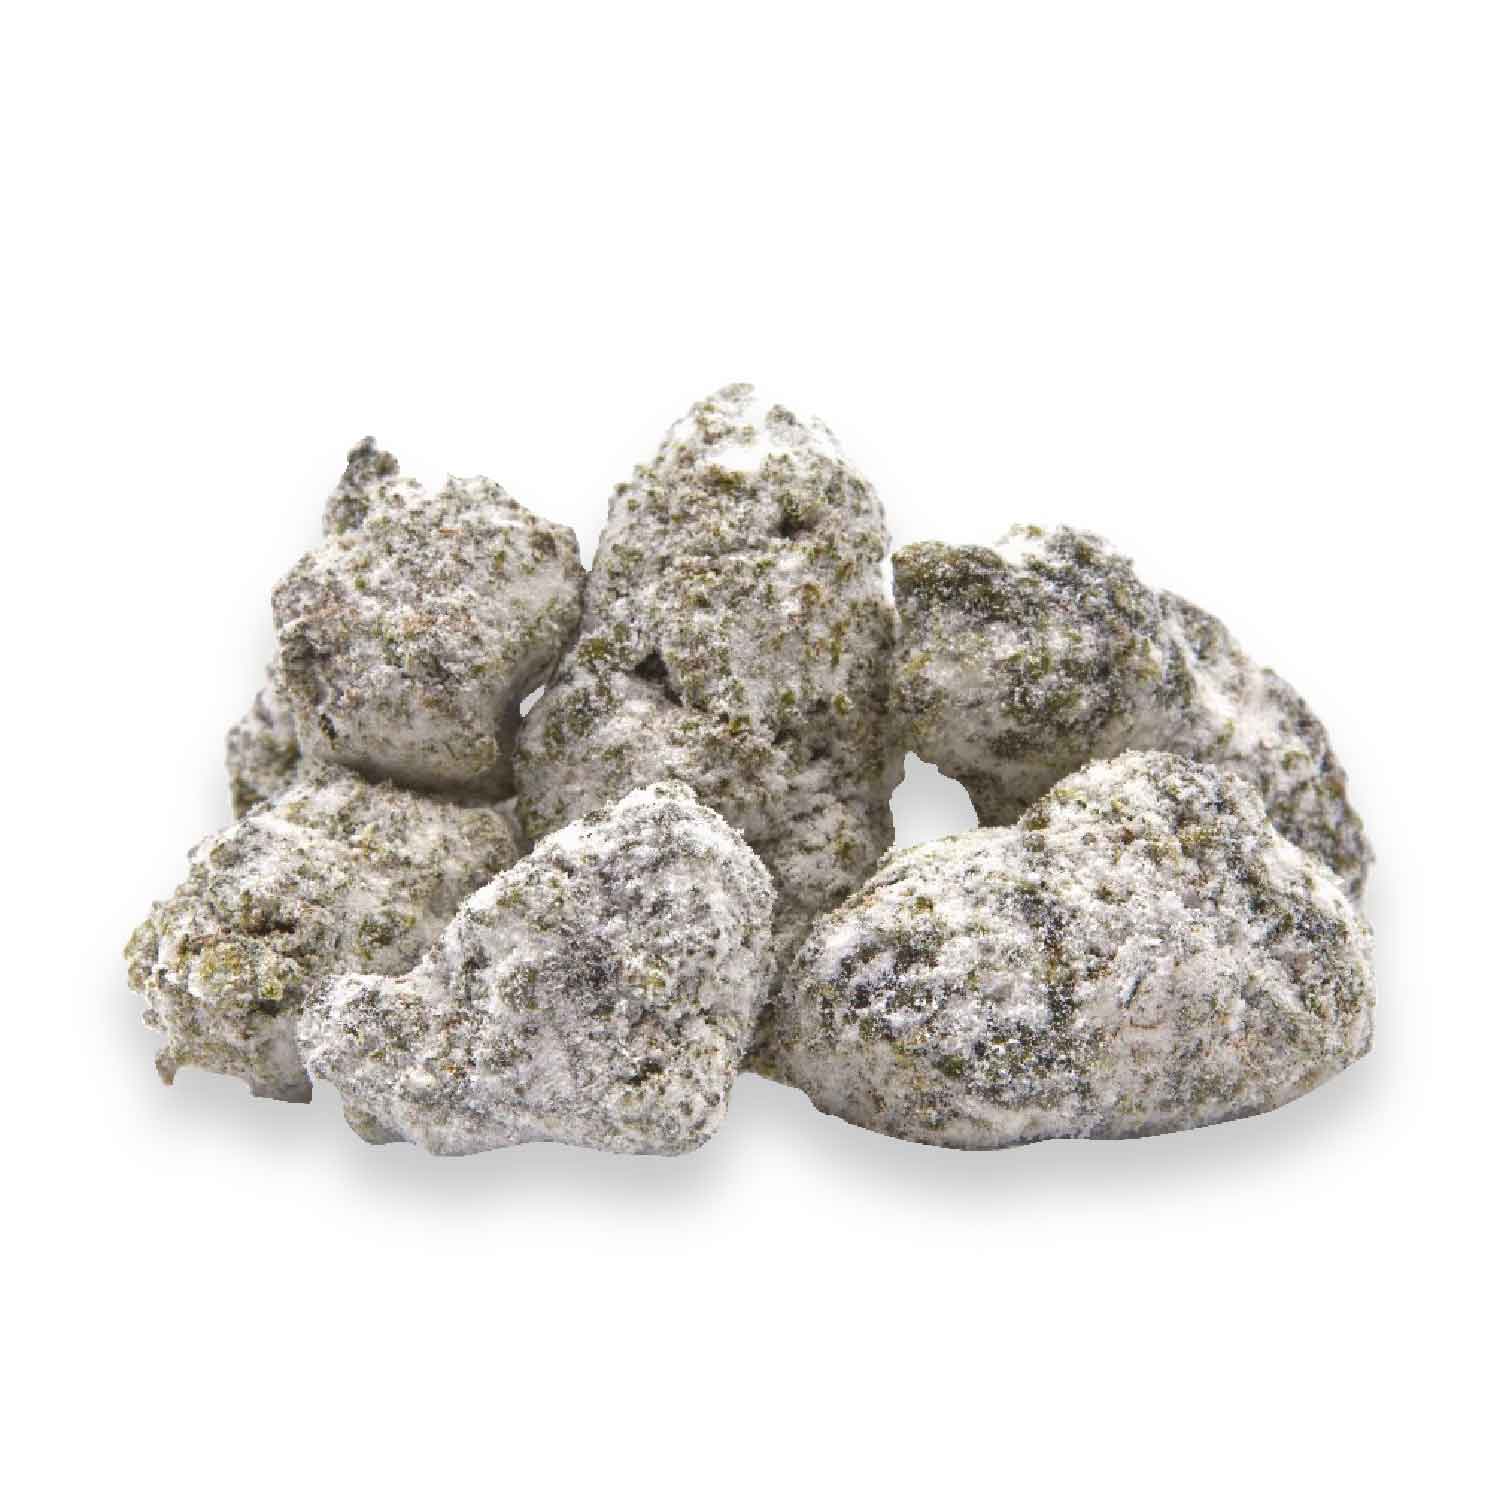 Cannabis-Asteroids